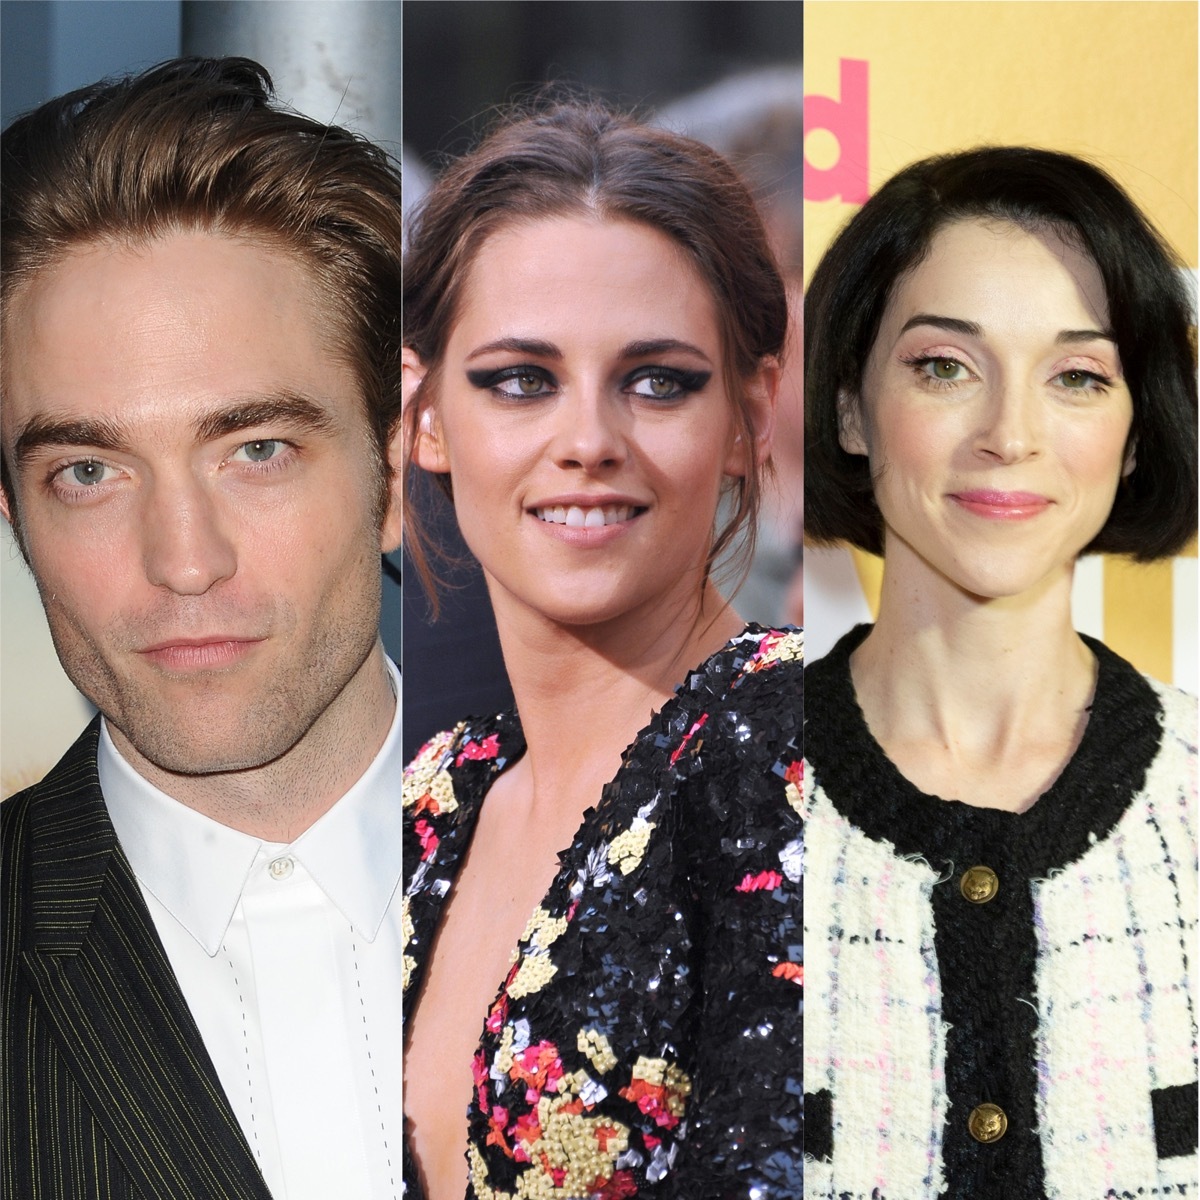 Robert Pattinson, Kristen Stewart, and St. Vincent